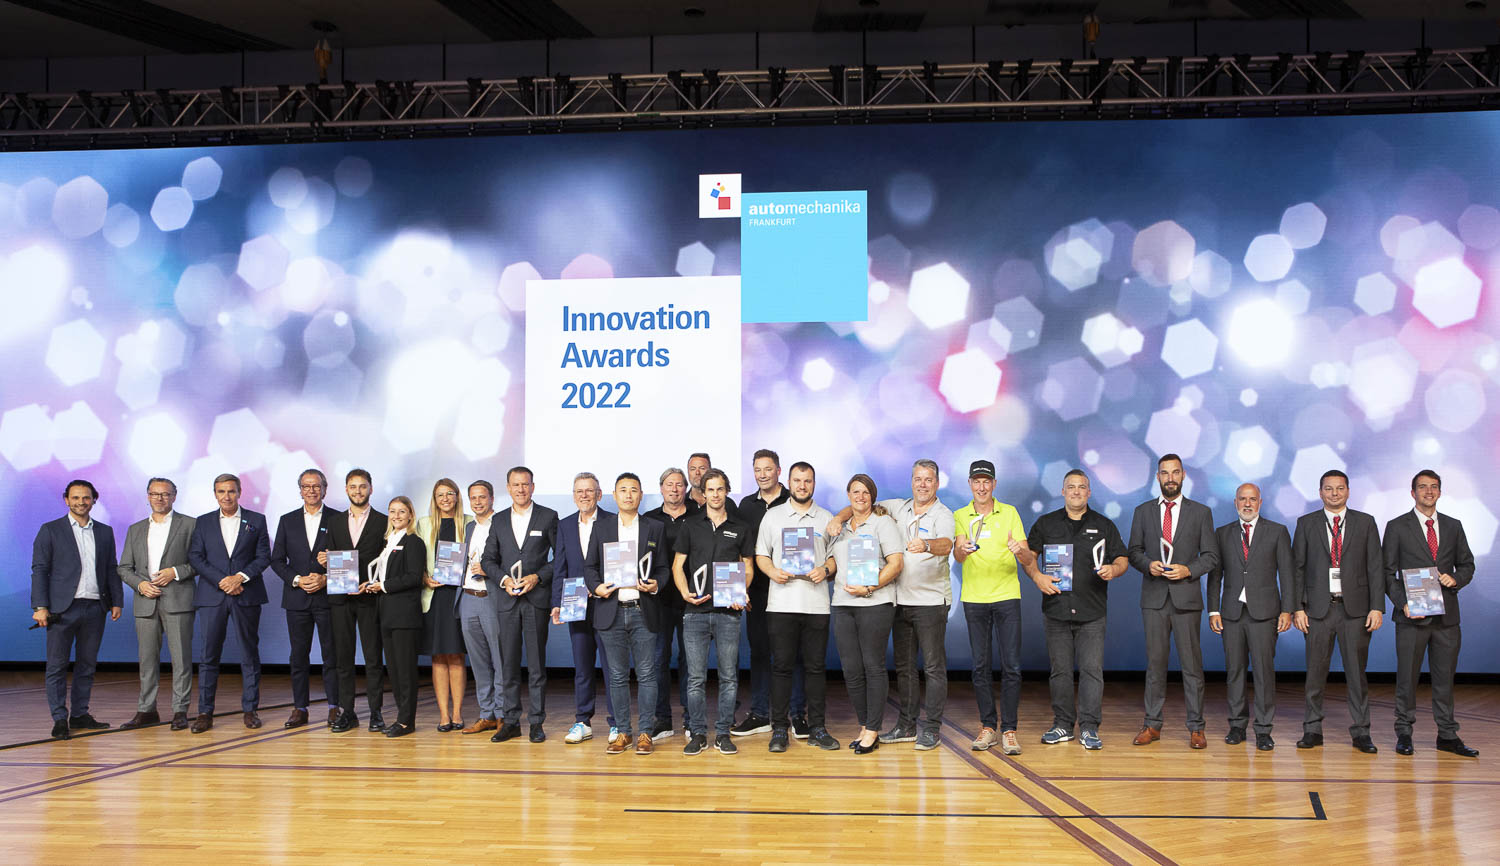 Jens Liebchen Innovation Awards